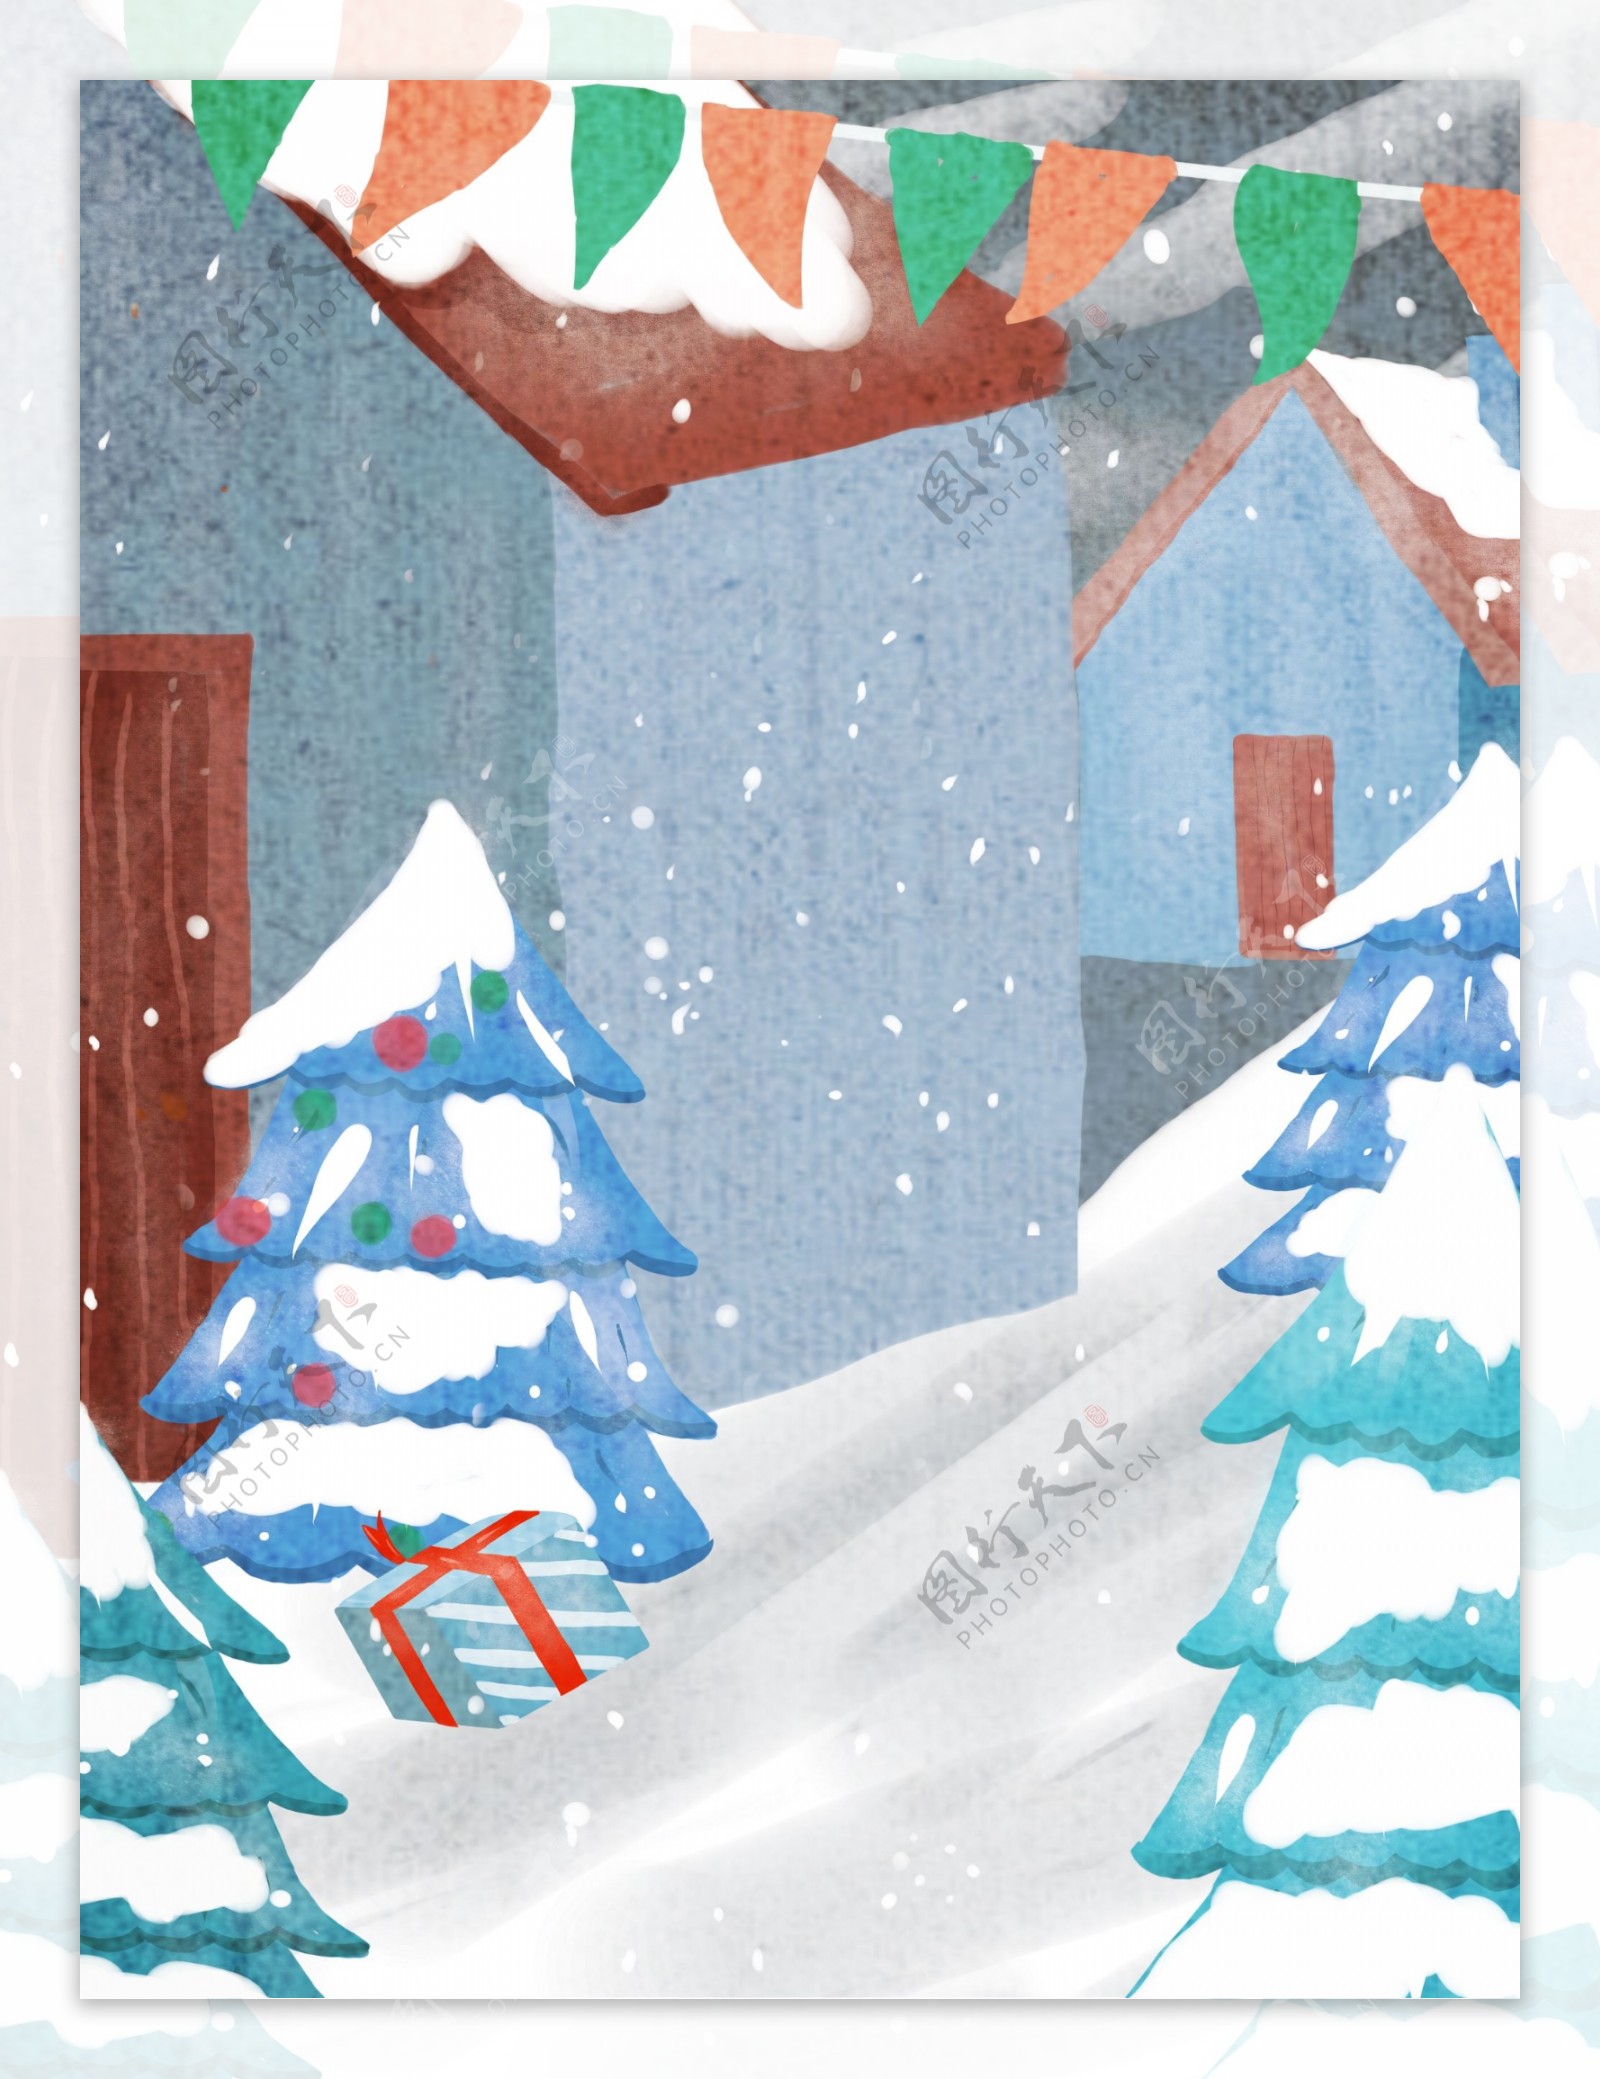 蓝色雪花圣诞背景素材